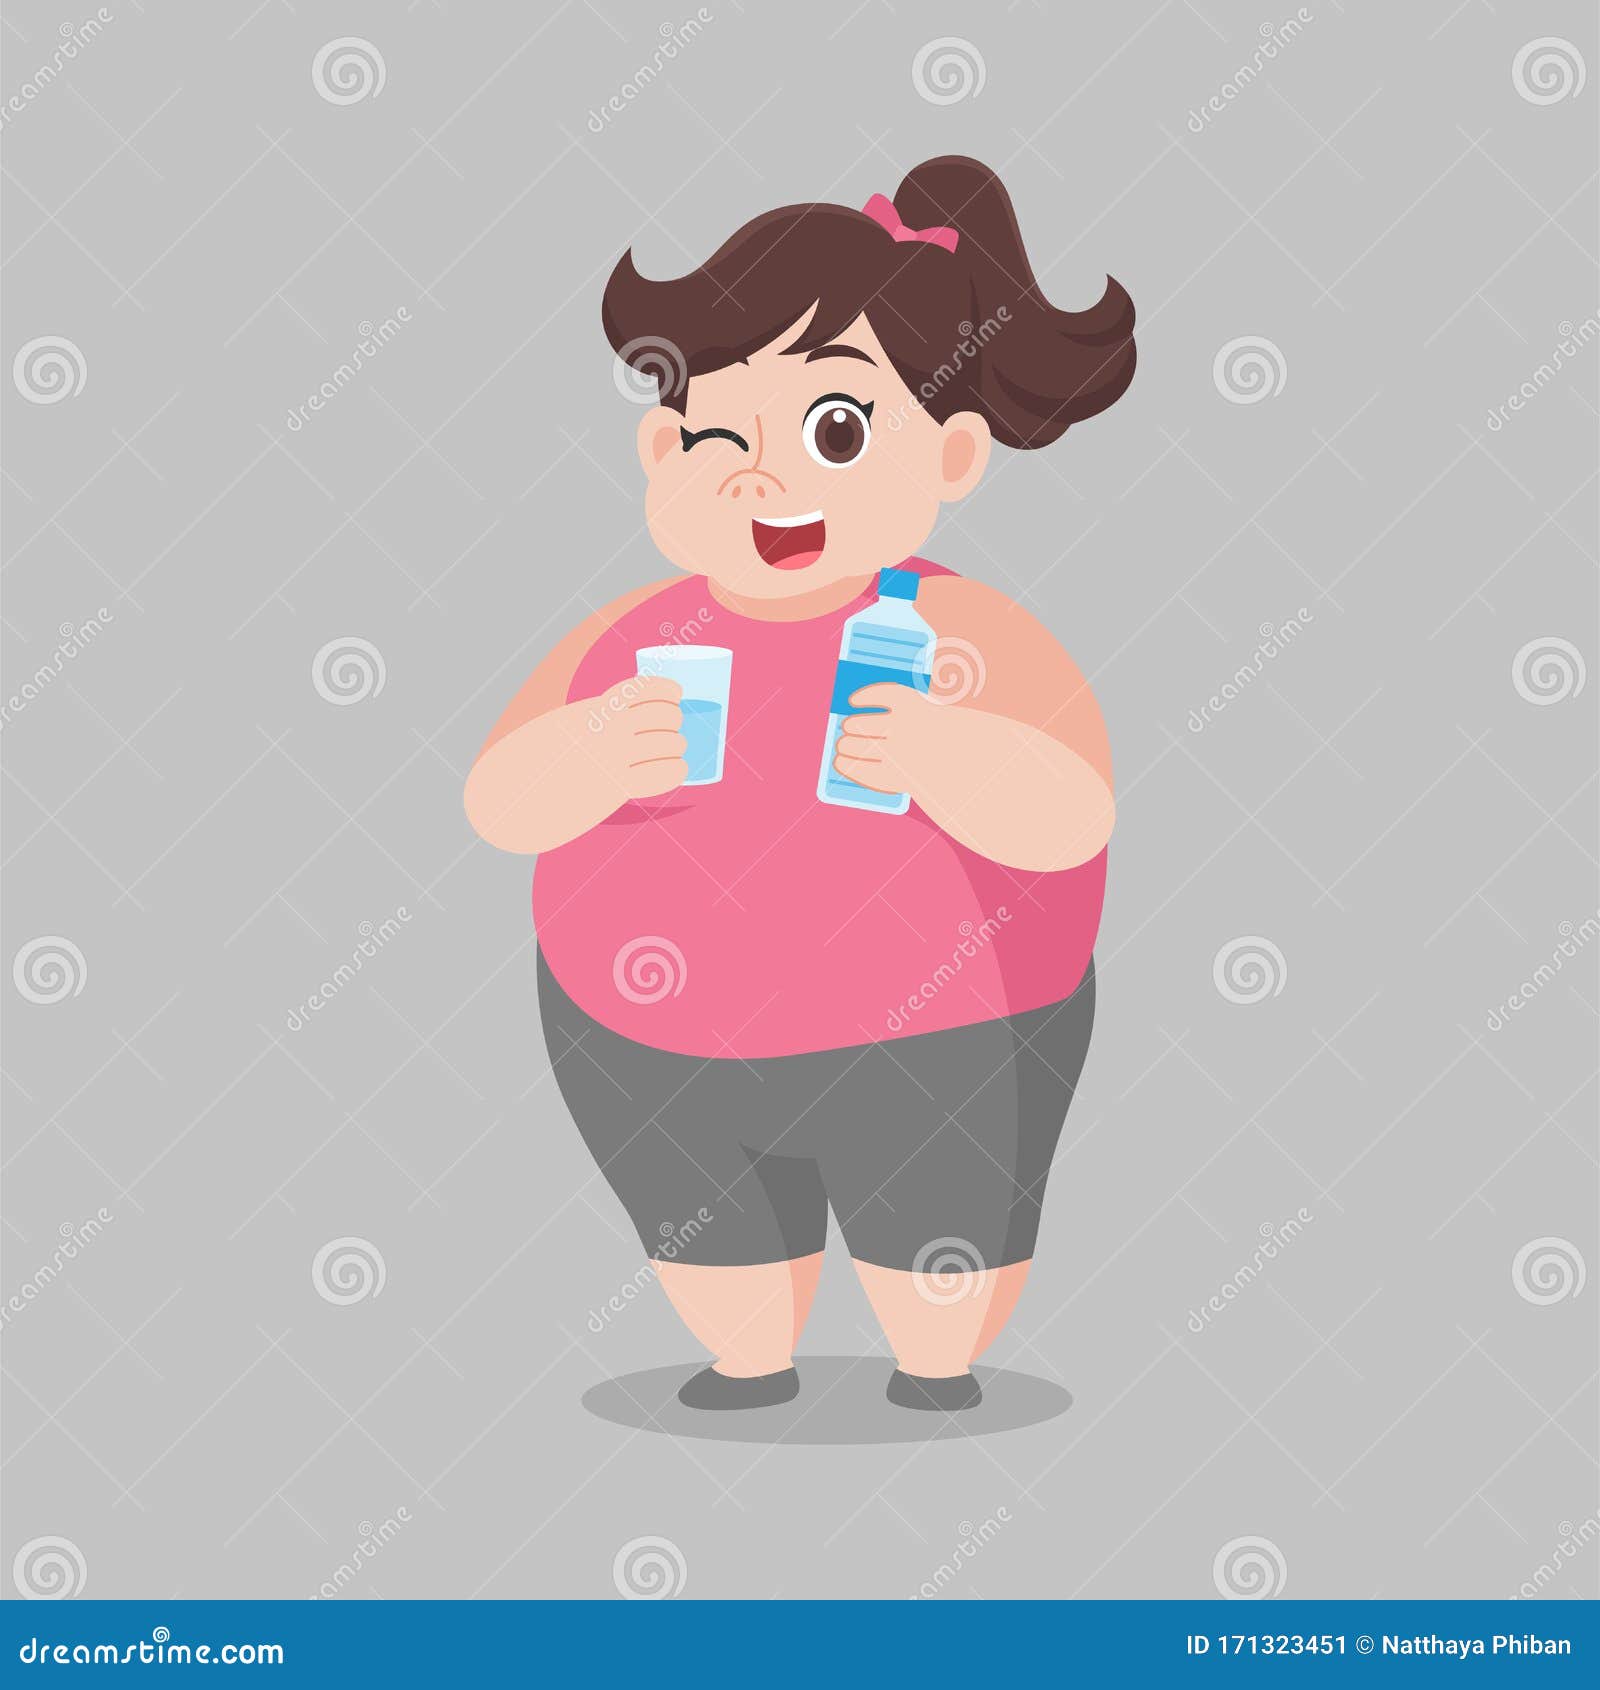 Απώλεια βάρους χωρίς δίαιτα: 7 ανησυχητικές αιτίες